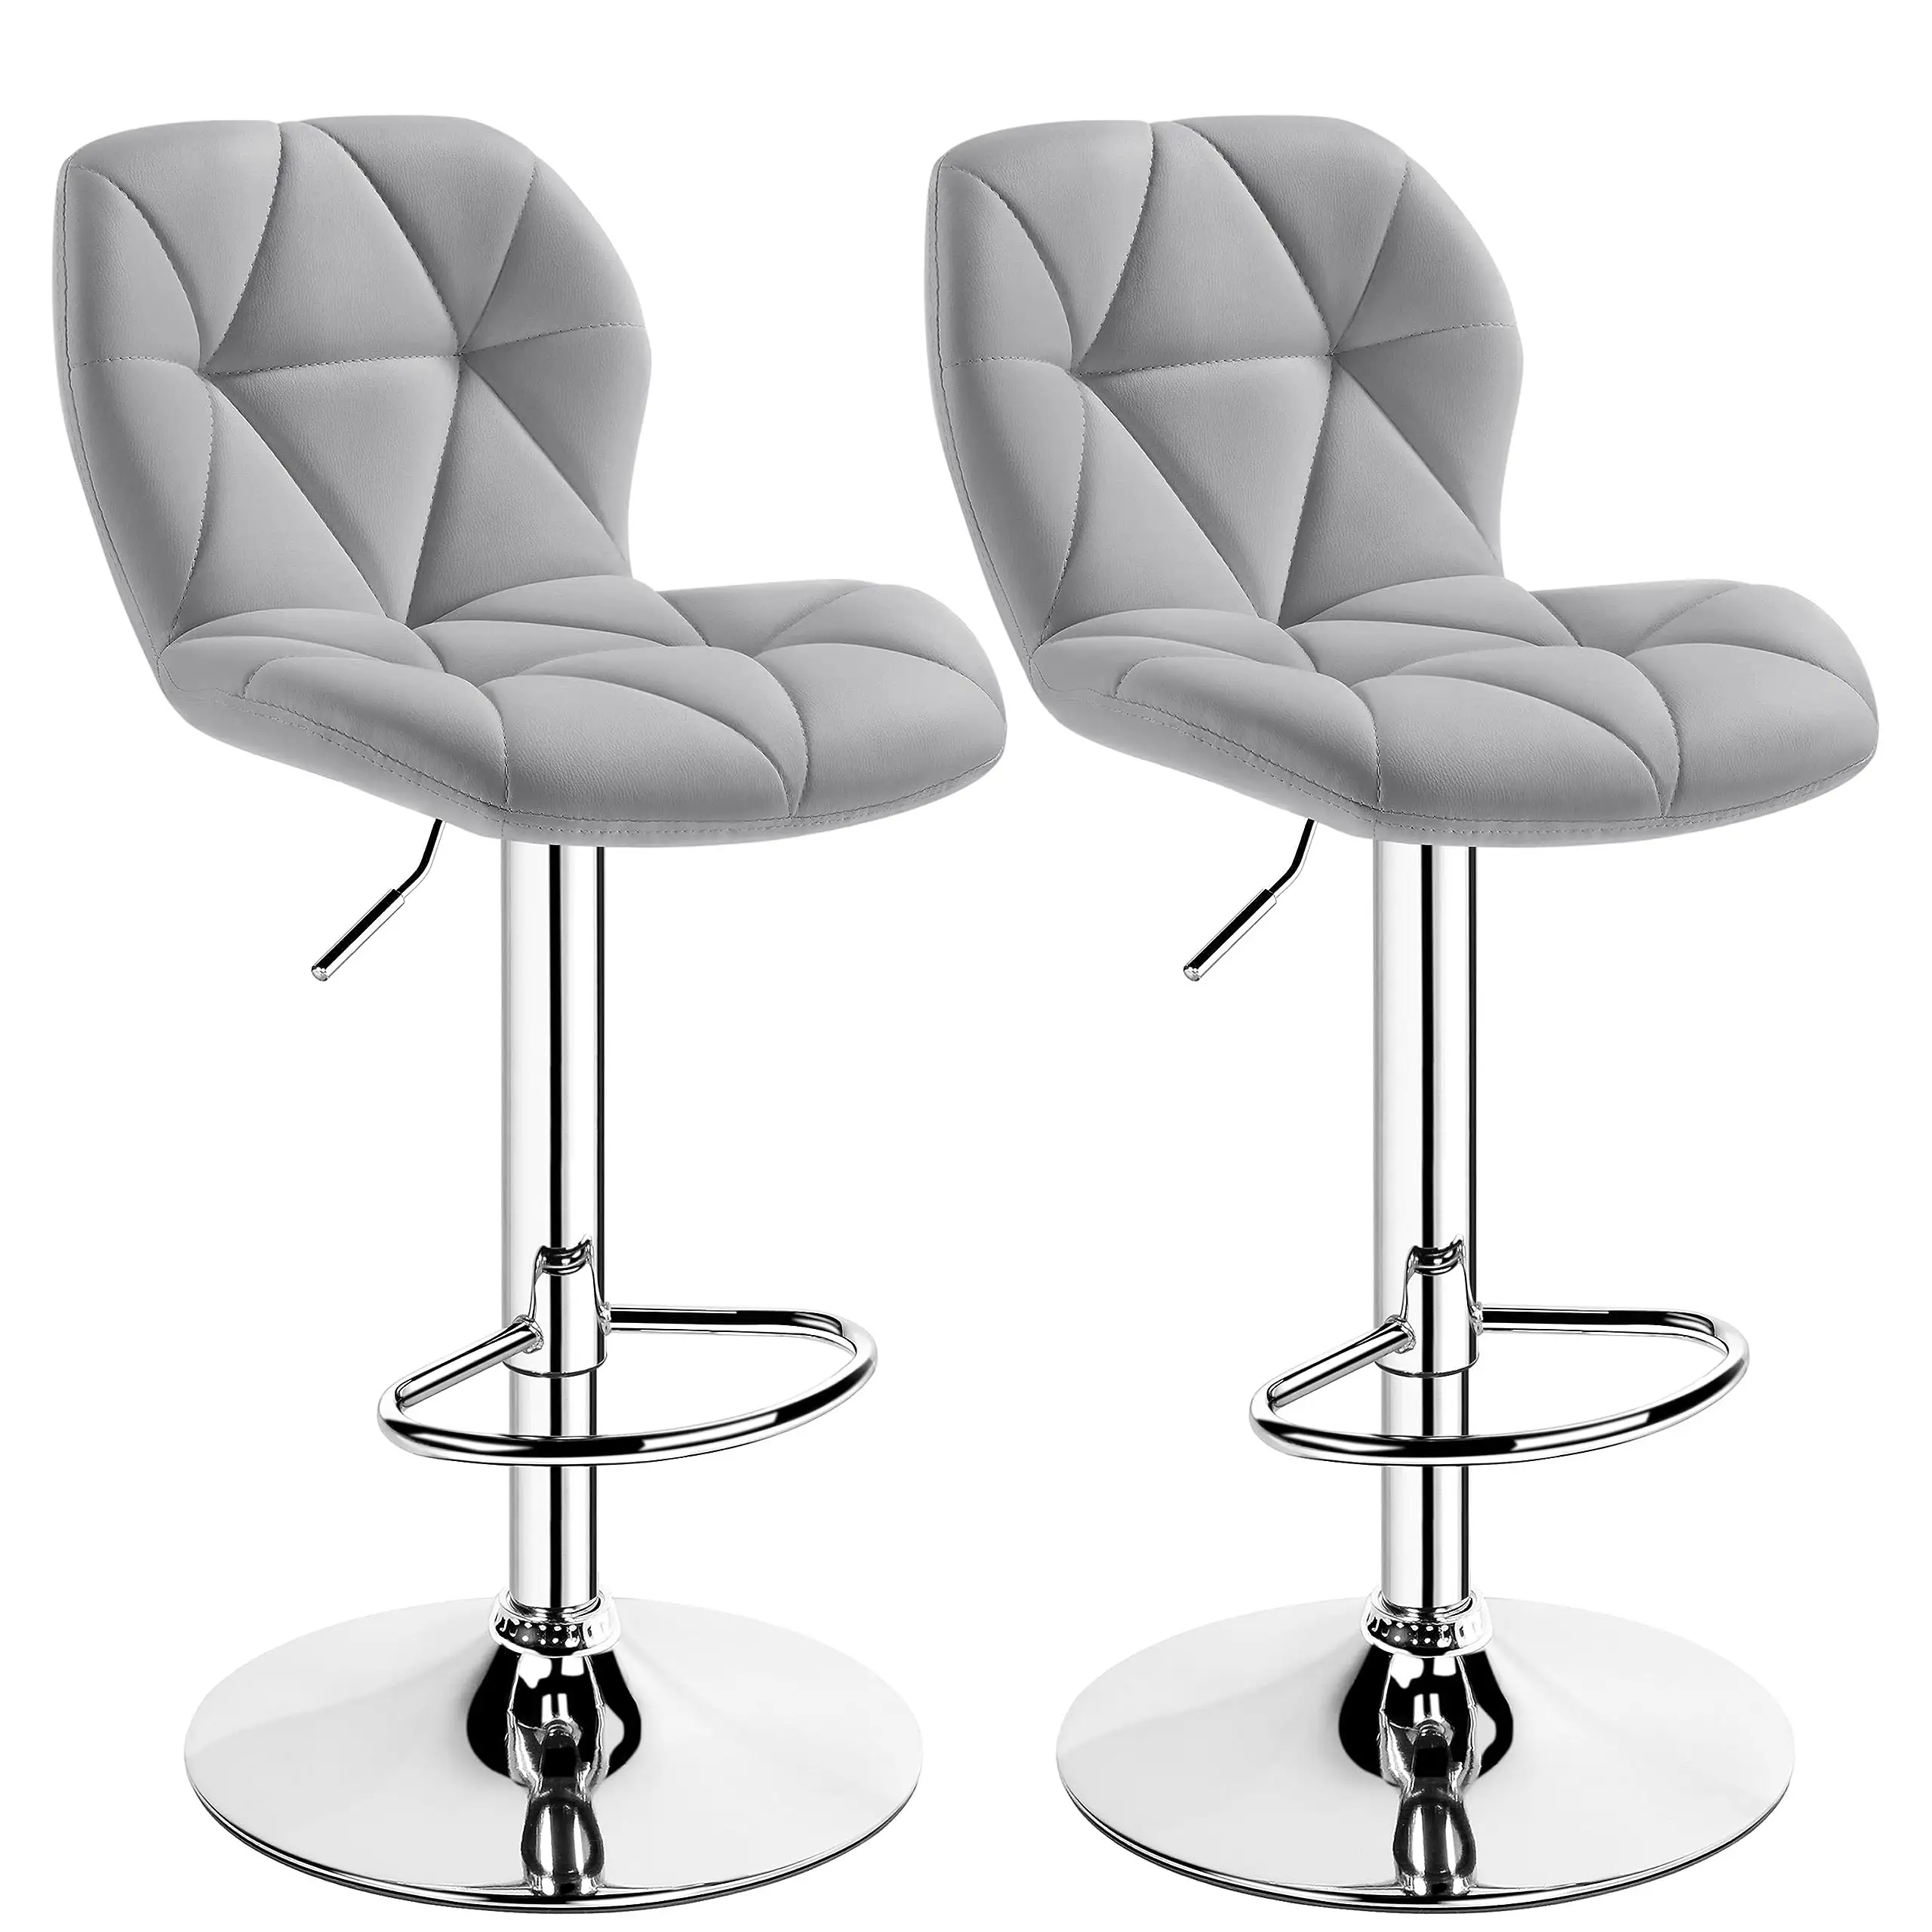 ALINUNU fabbrica vendita calda banco sgabello sedie da Bar con schienale regolabile in altezza alti sgabelli da Bar moderni in pelle sintetica